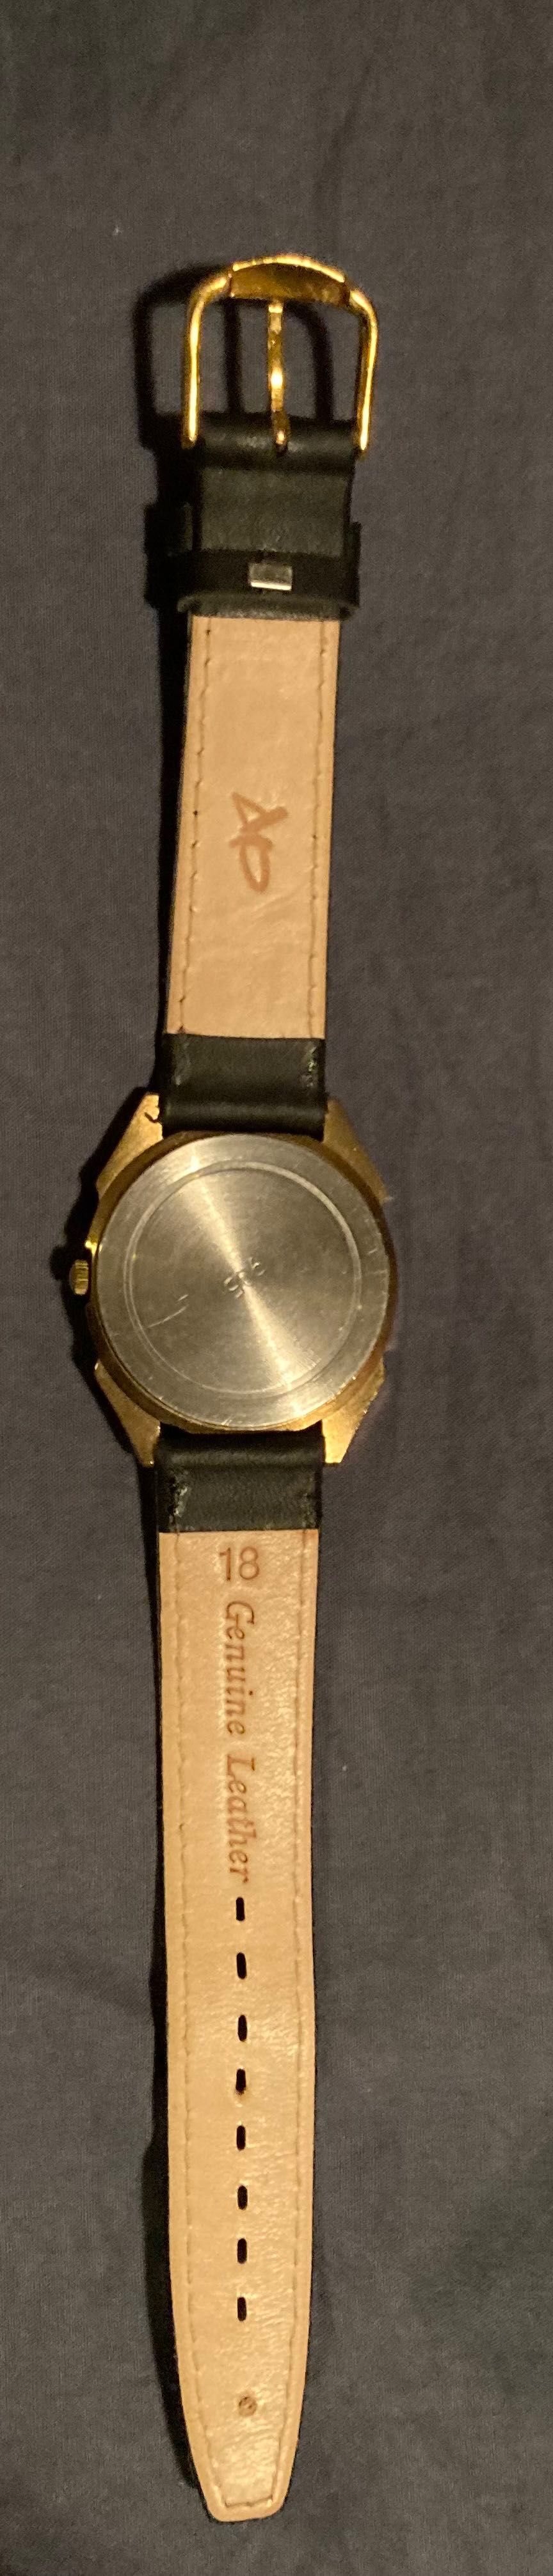 Zegarek unisex wyjątkowy